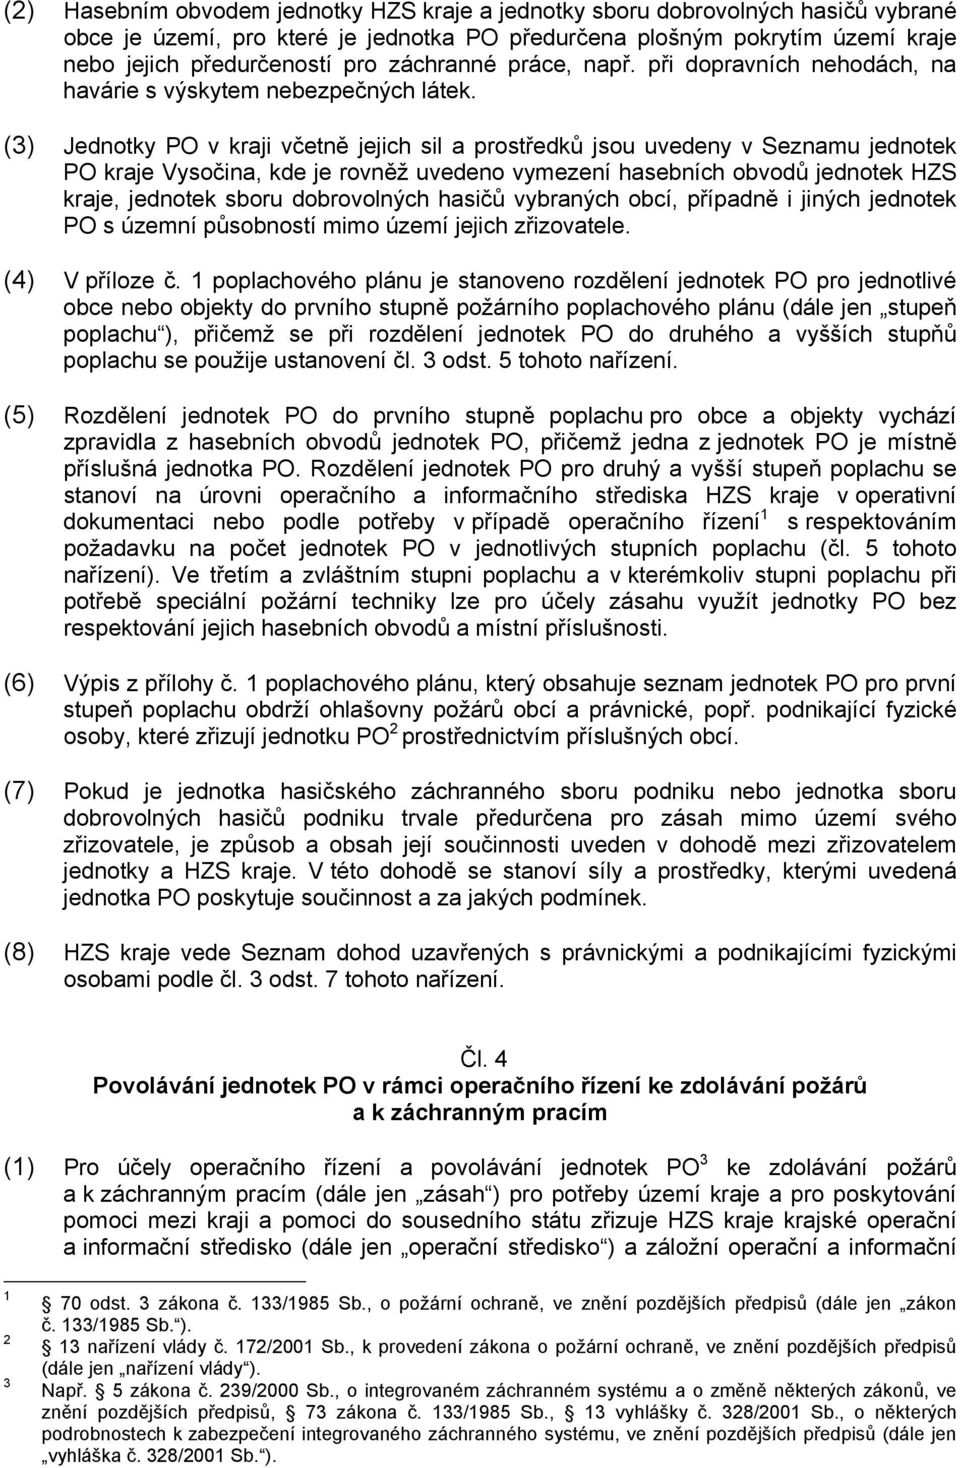 (3) Jednotky PO v kraji včetně jejich sil a prostředků jsou uvedeny v Seznamu jednotek PO kraje Vysočina, kde je rovněž uvedeno vymezení hasebních obvodů jednotek HZS kraje, jednotek sboru